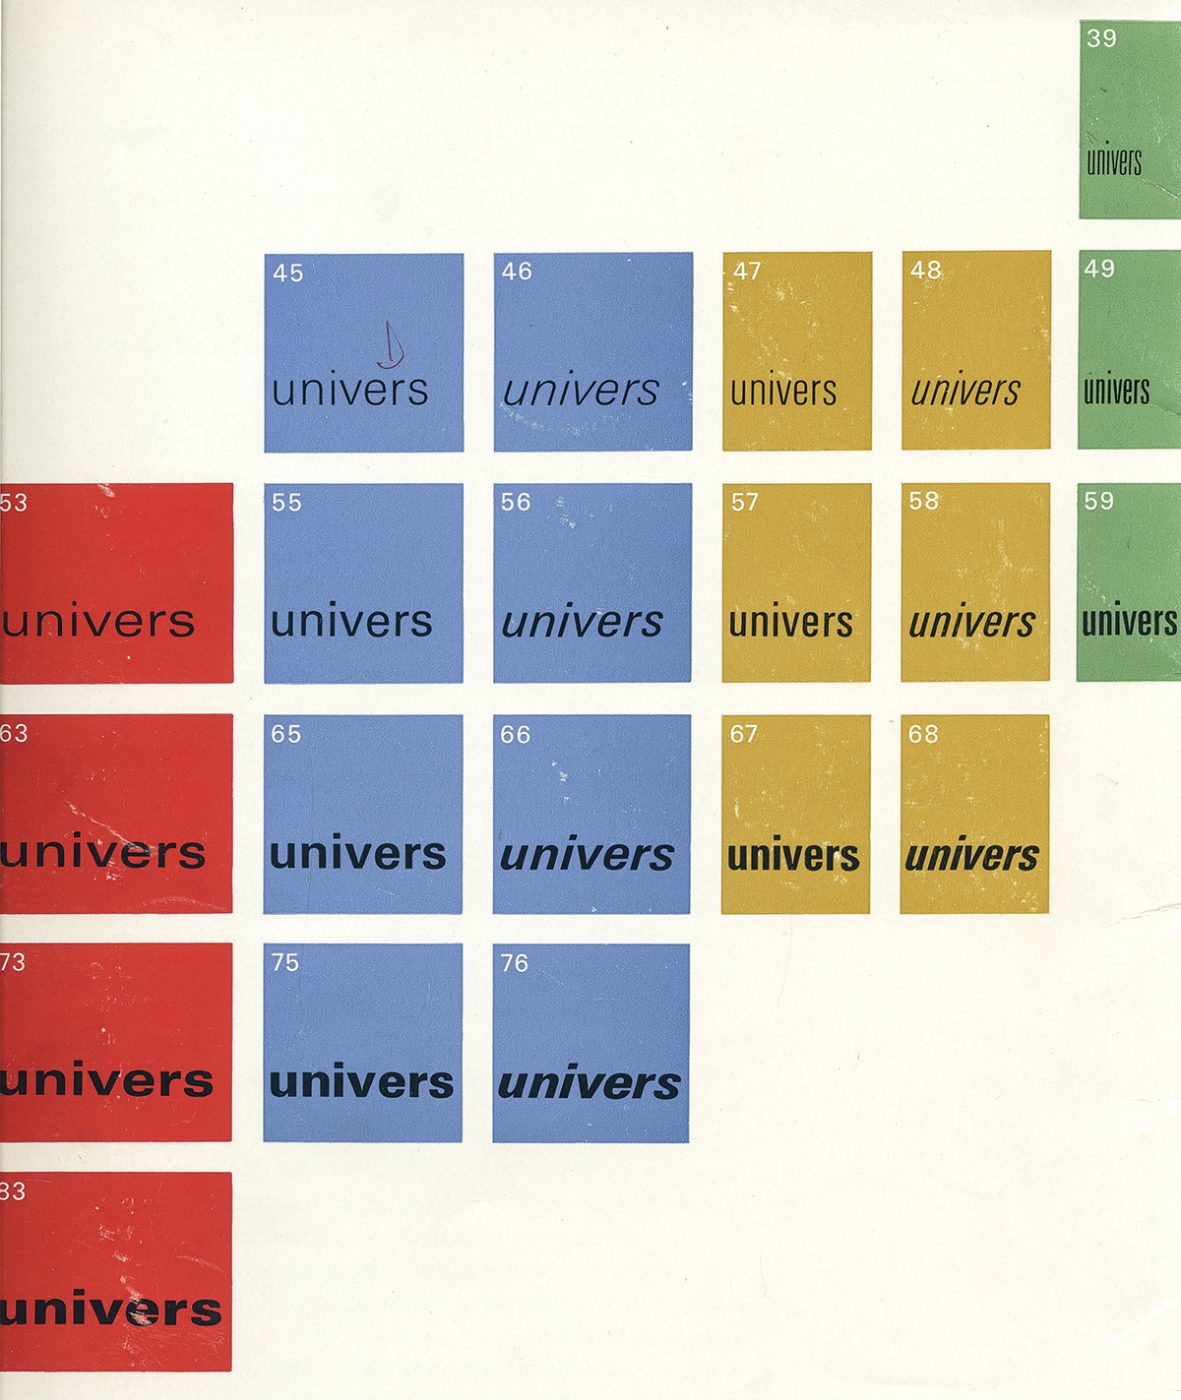 2021 07 21 Typography Univers 3